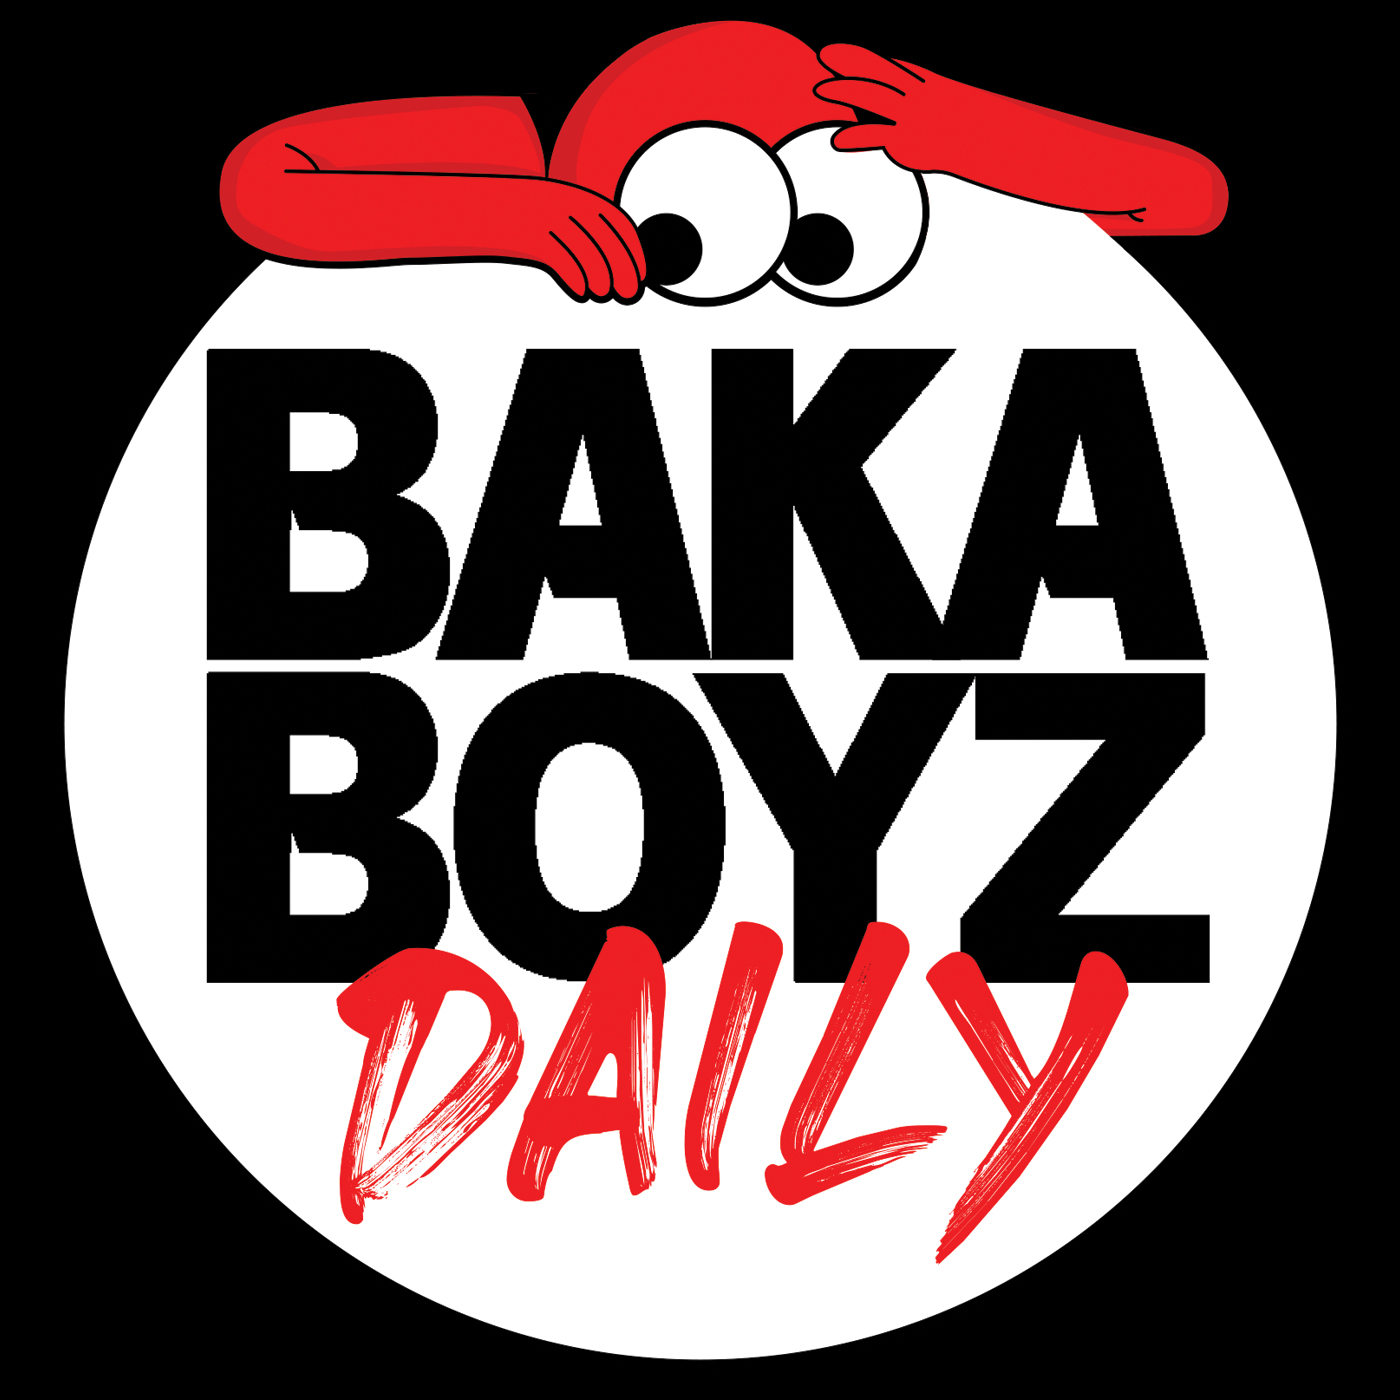 Baka Boyz